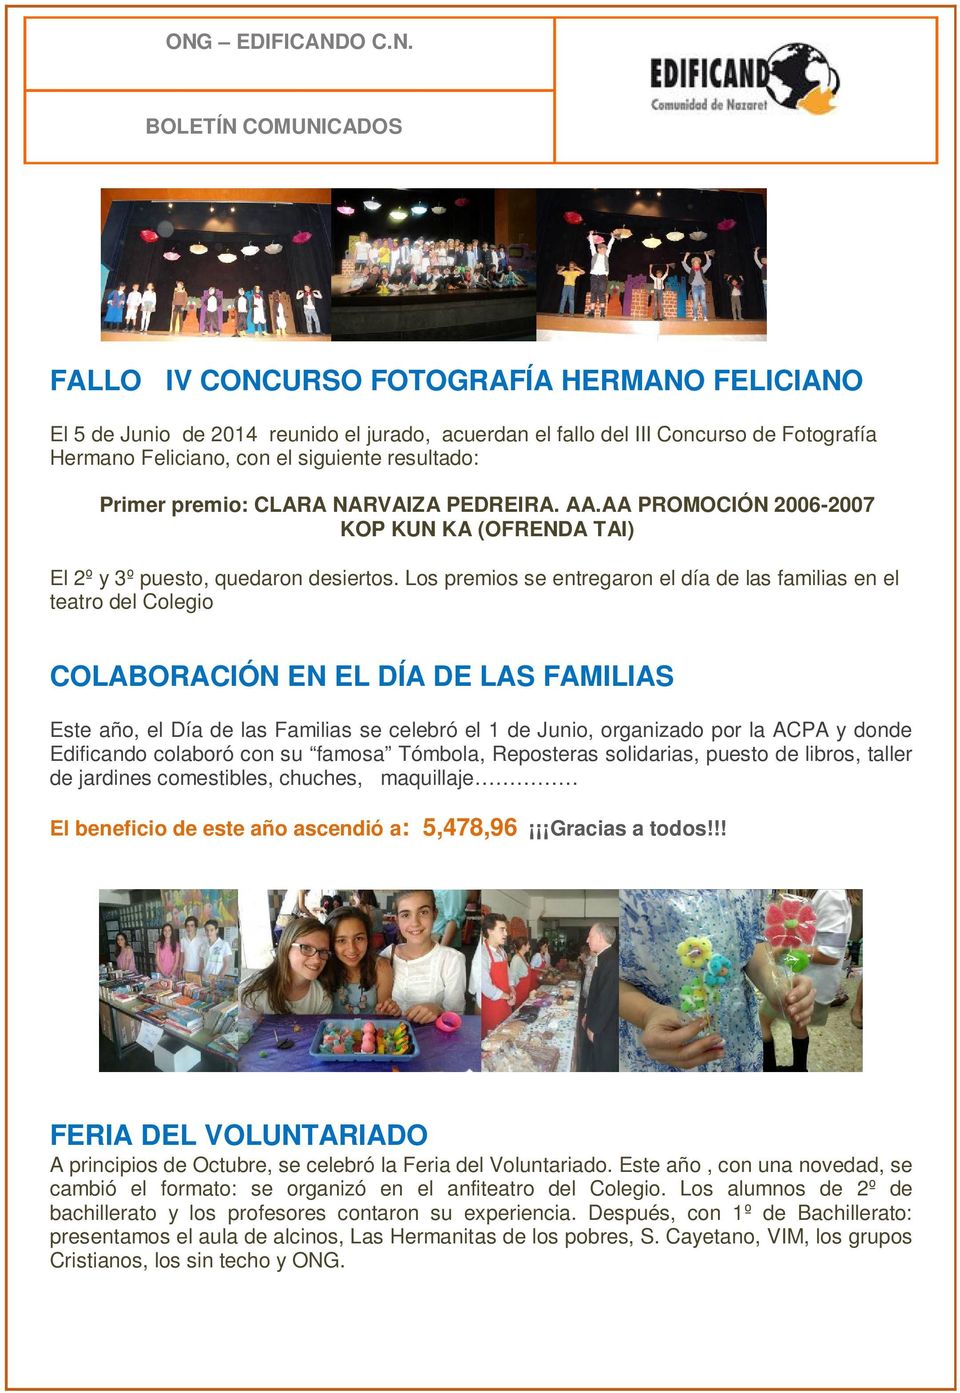 Los premios se entregaron el día de las familias en el teatro del Colegio COLABORACIÓN EN EL DÍA DE LAS FAMILIAS Este año, el Día de las Familias se celebró el 1 de Junio, organizado por la ACPA y